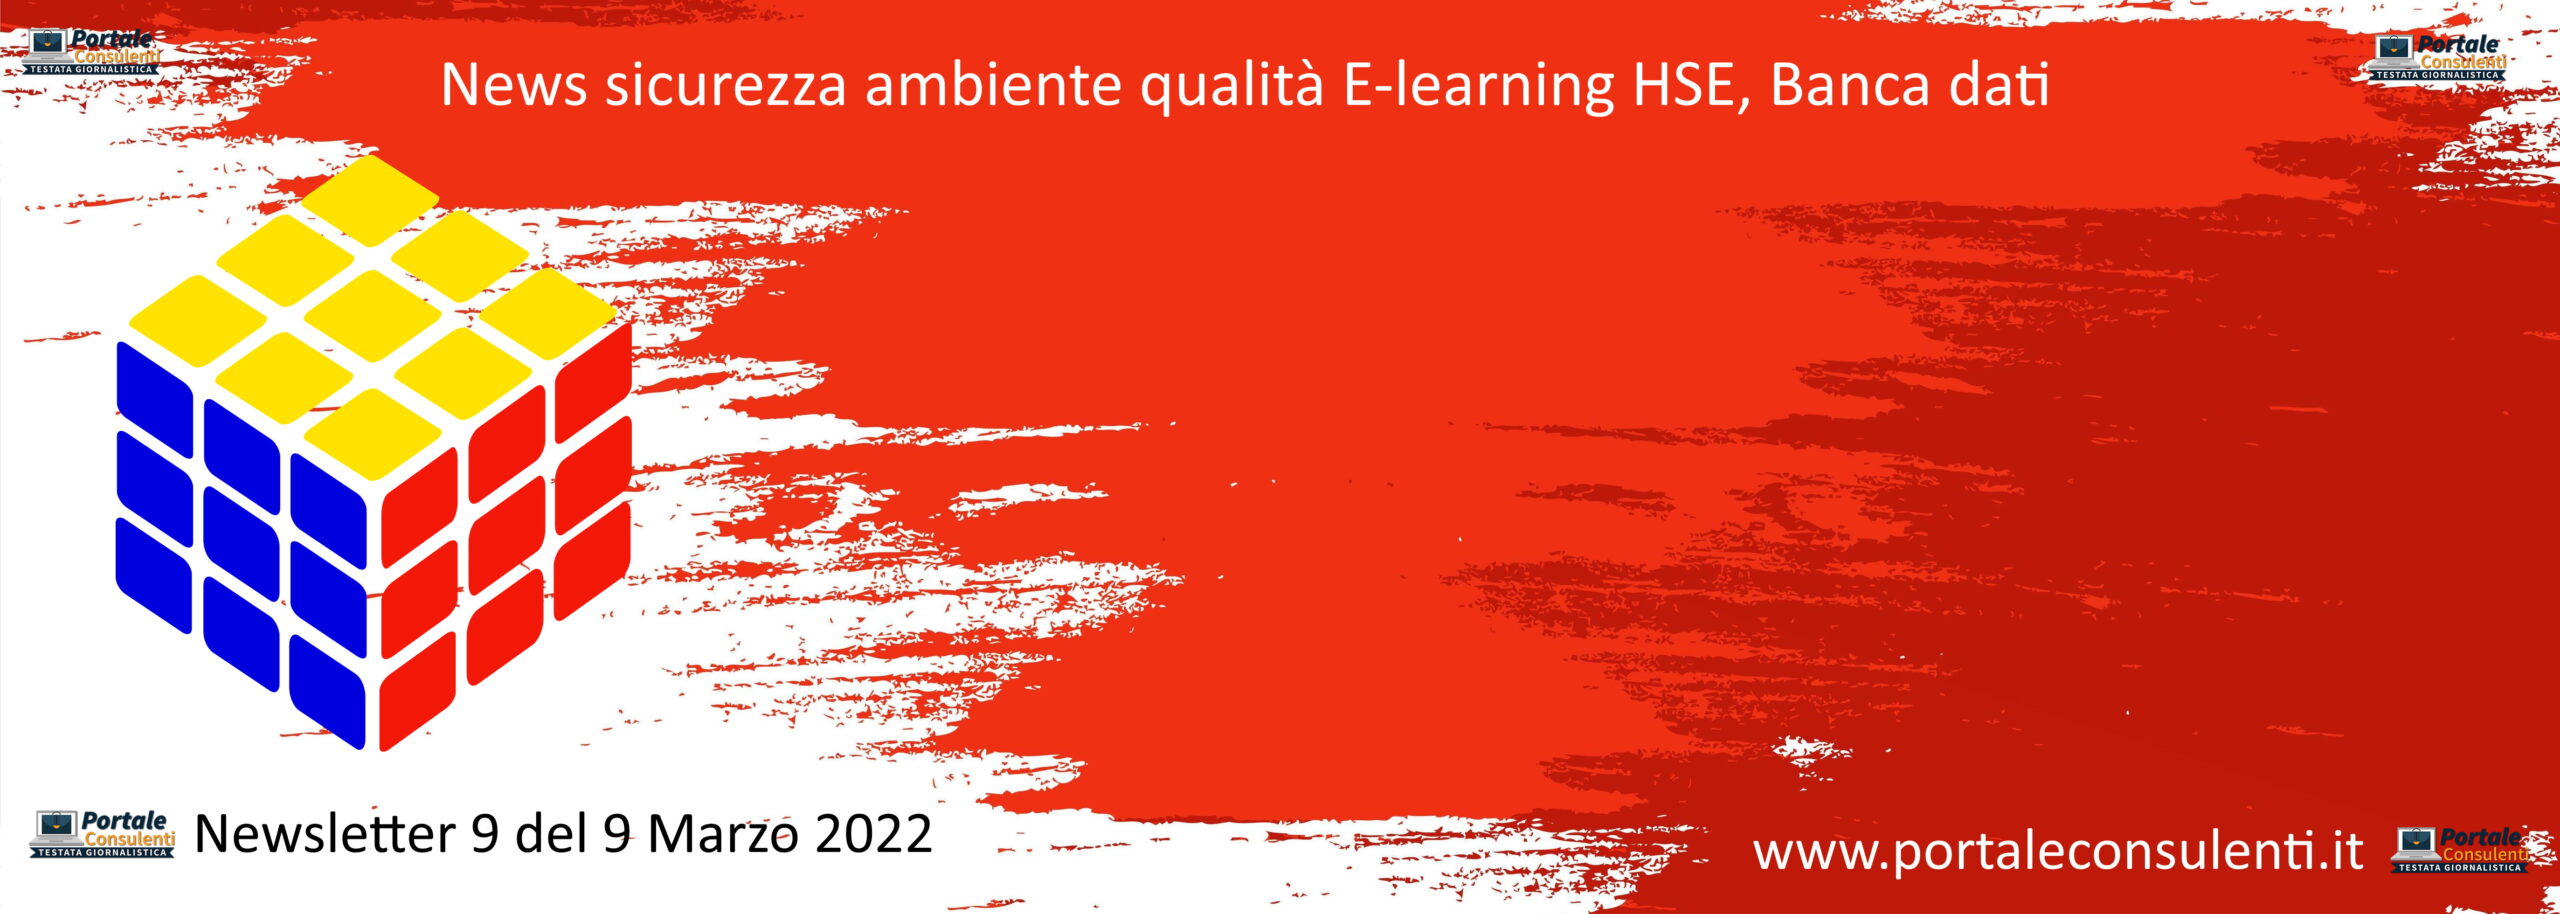 News sicurezza ambiente qualità E-learning HSE, Banca dati